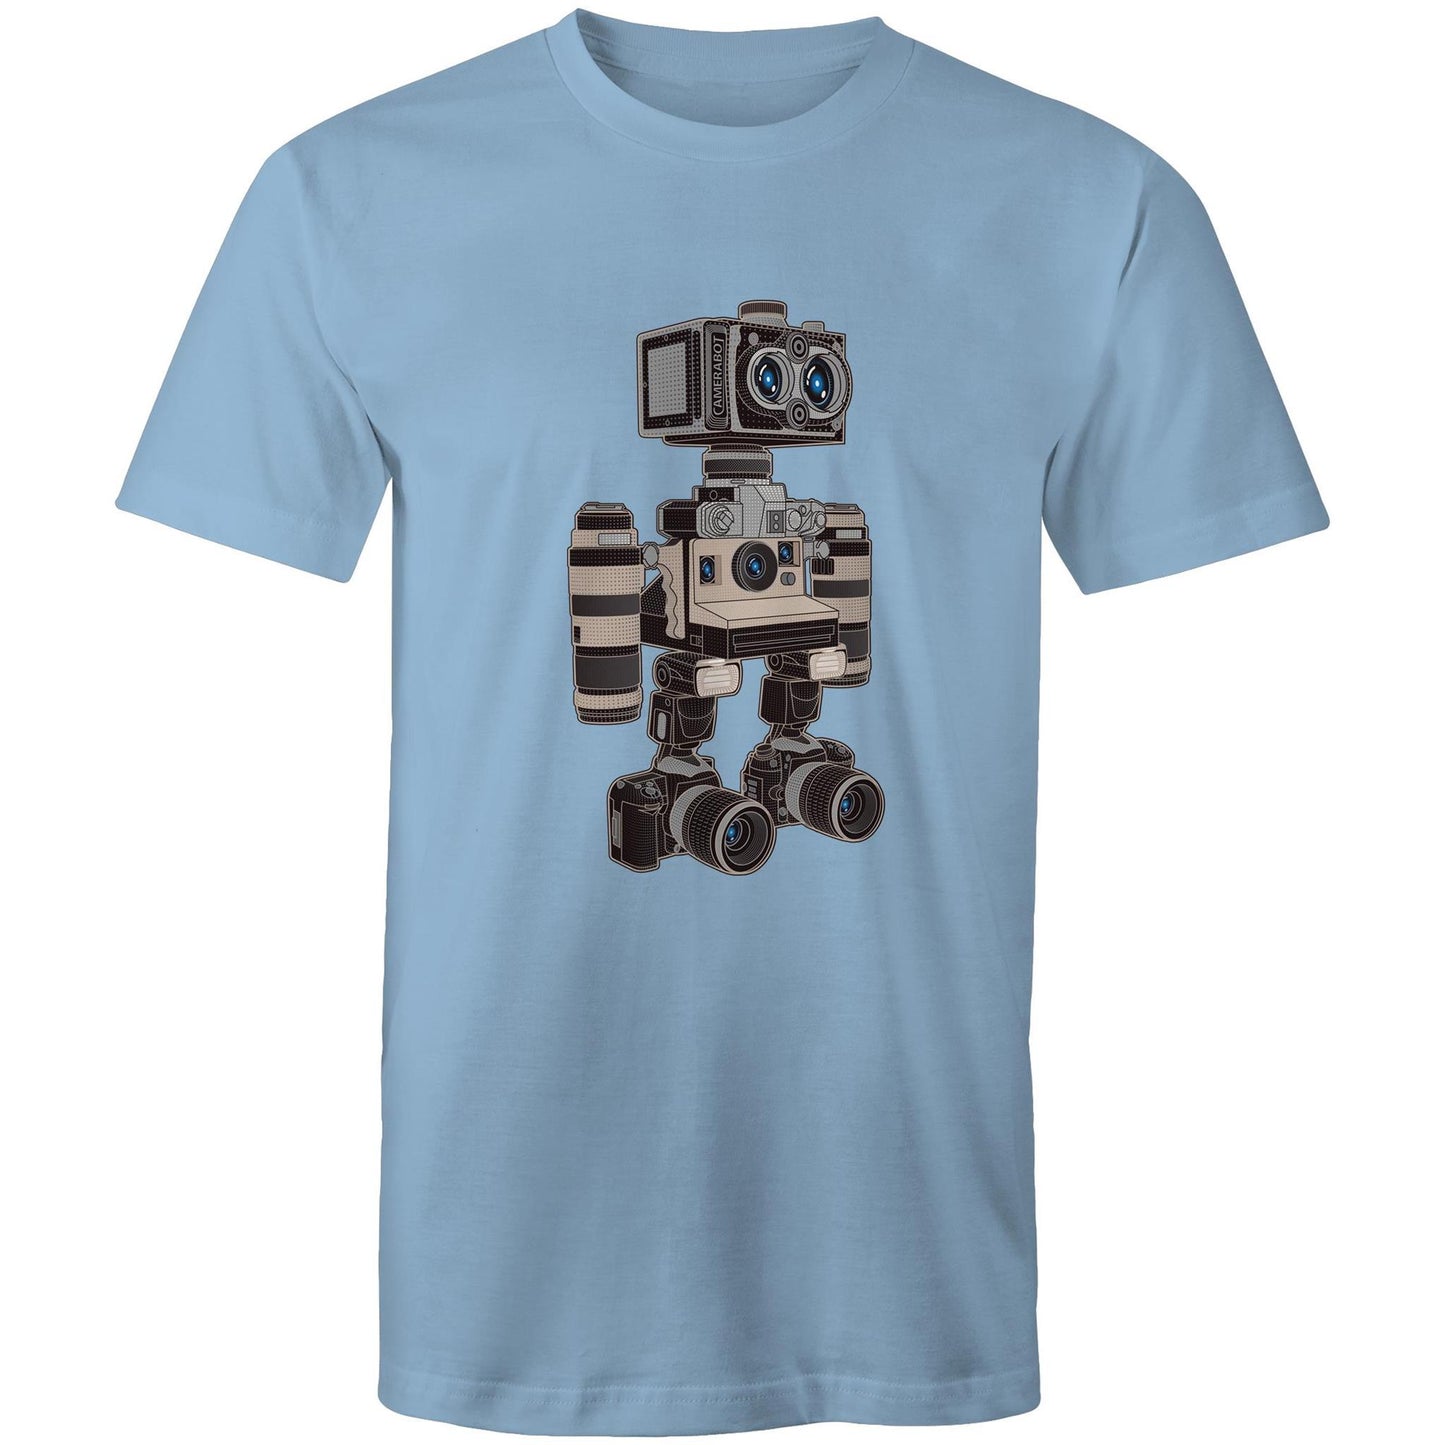 CameraBot 6000 - Men's T-Shirt